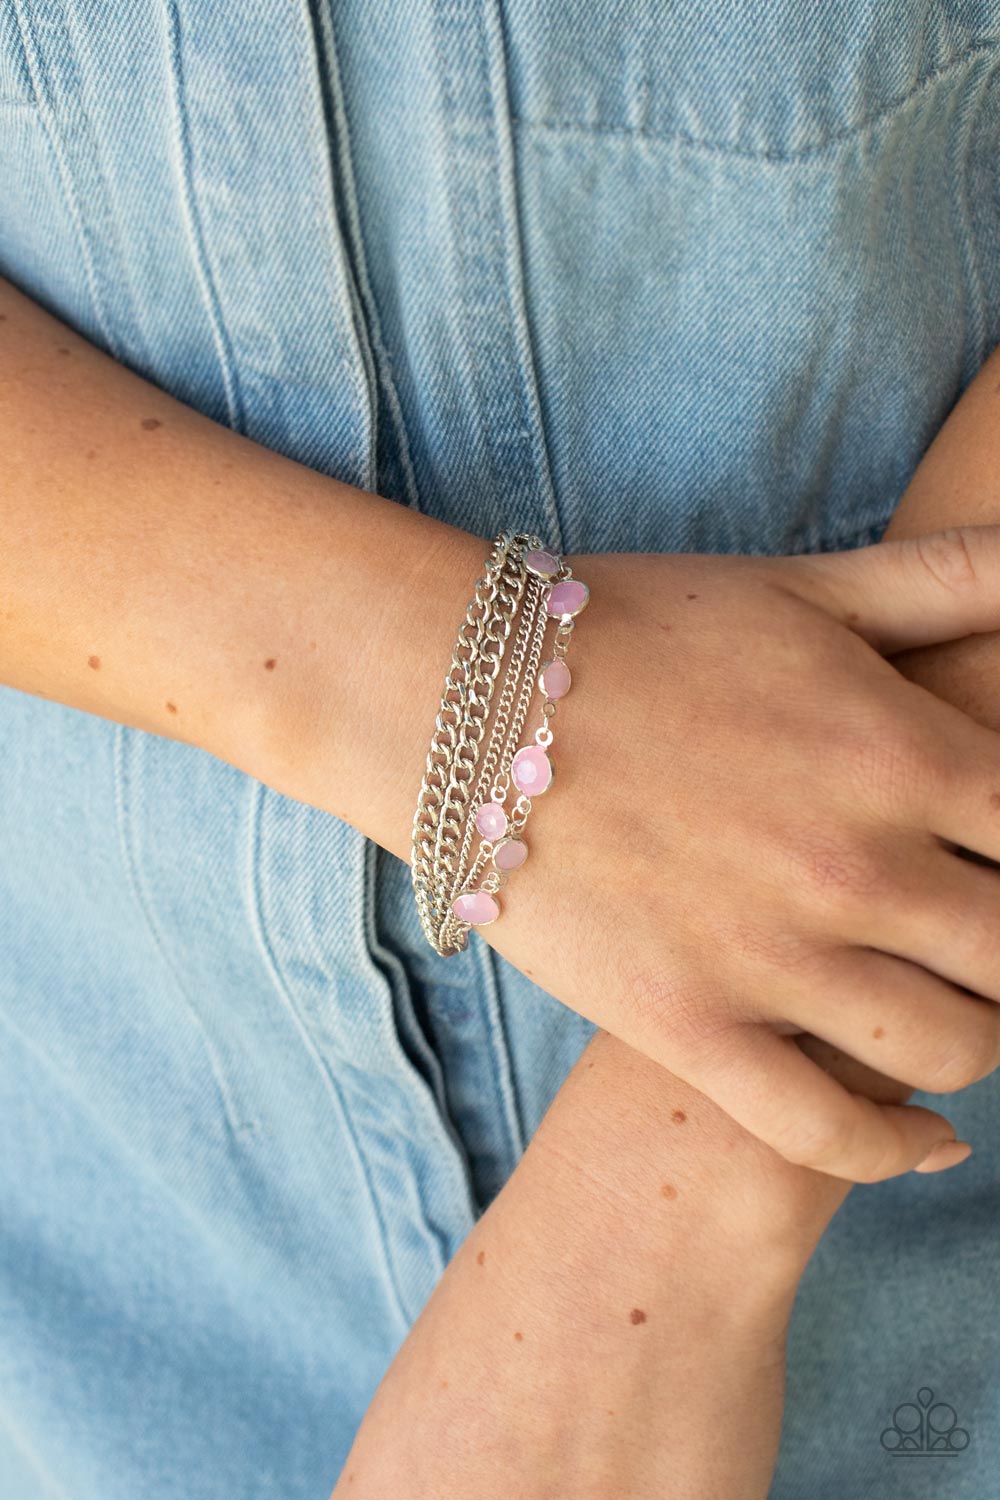 Paparazzi Glossy Goddess - Pink - Bracelet - $5 Jewelry with Ashley Swint